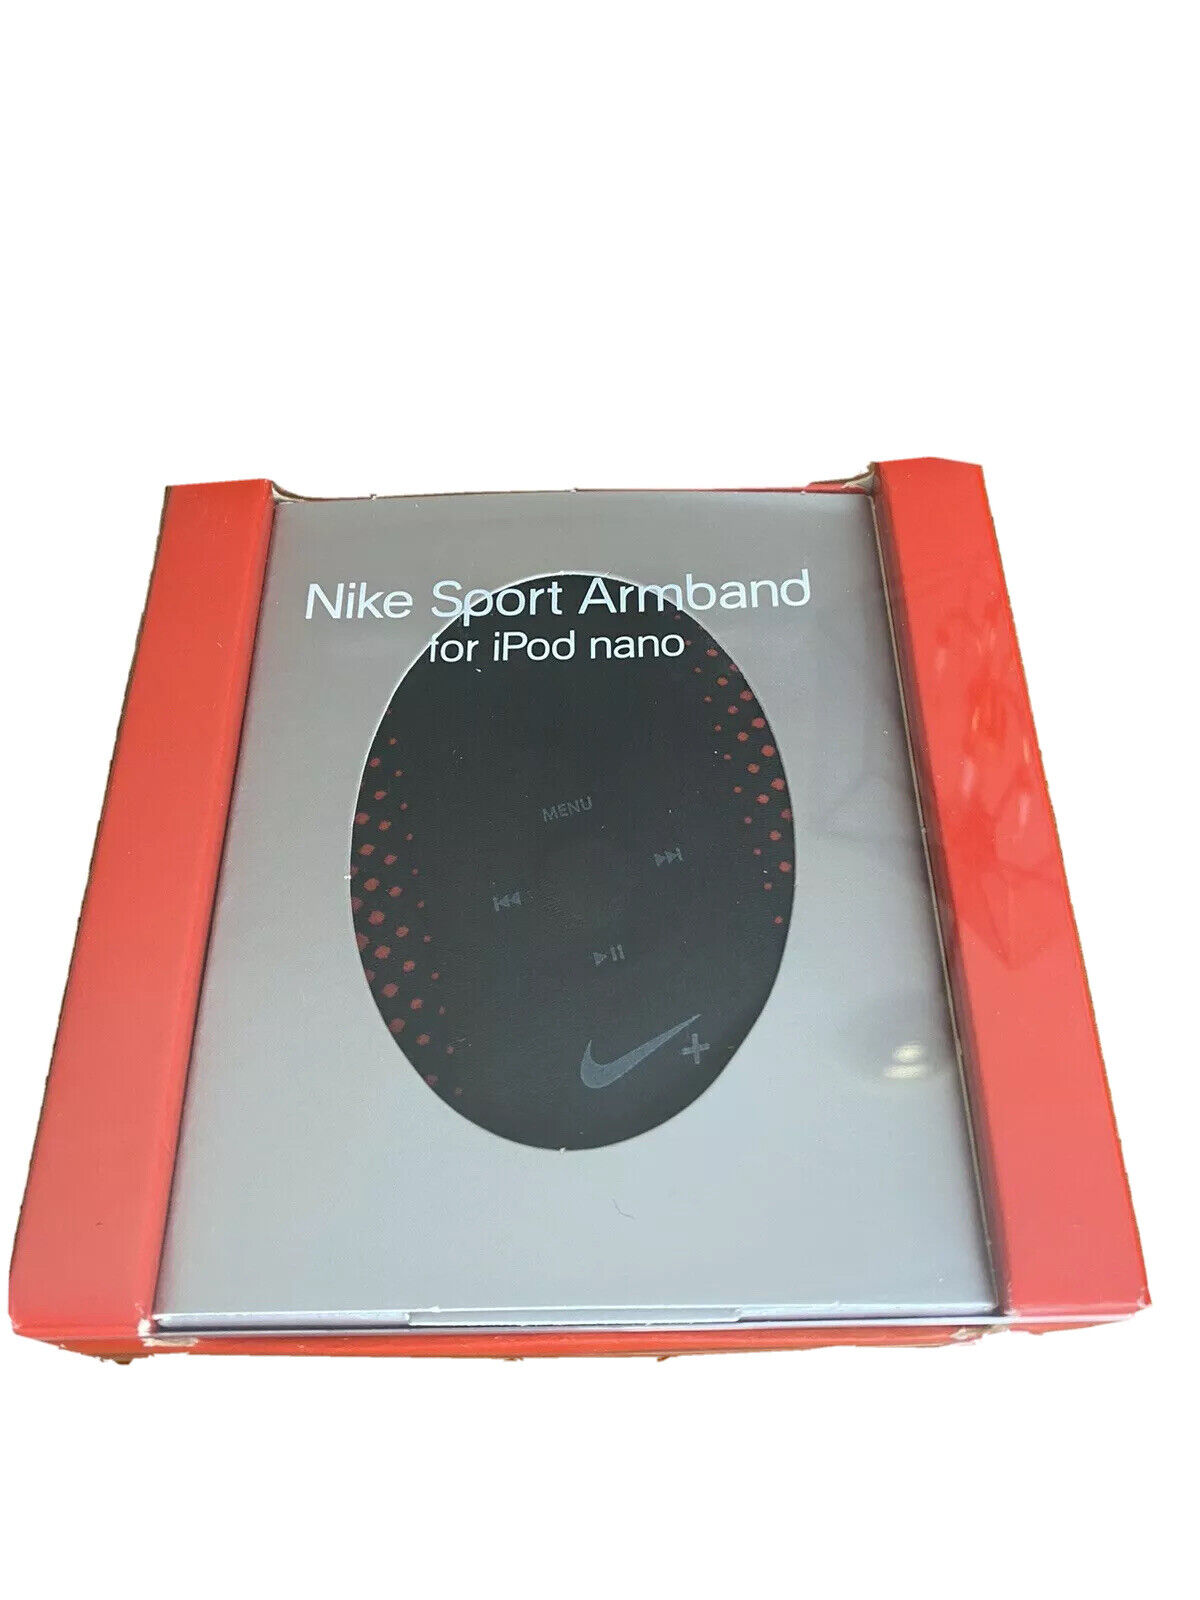 Nike Sport pulsera/brazalete/rojo negro/rojo para los modelos de Nano - ¡NUEVO! 883412940092 | eBay